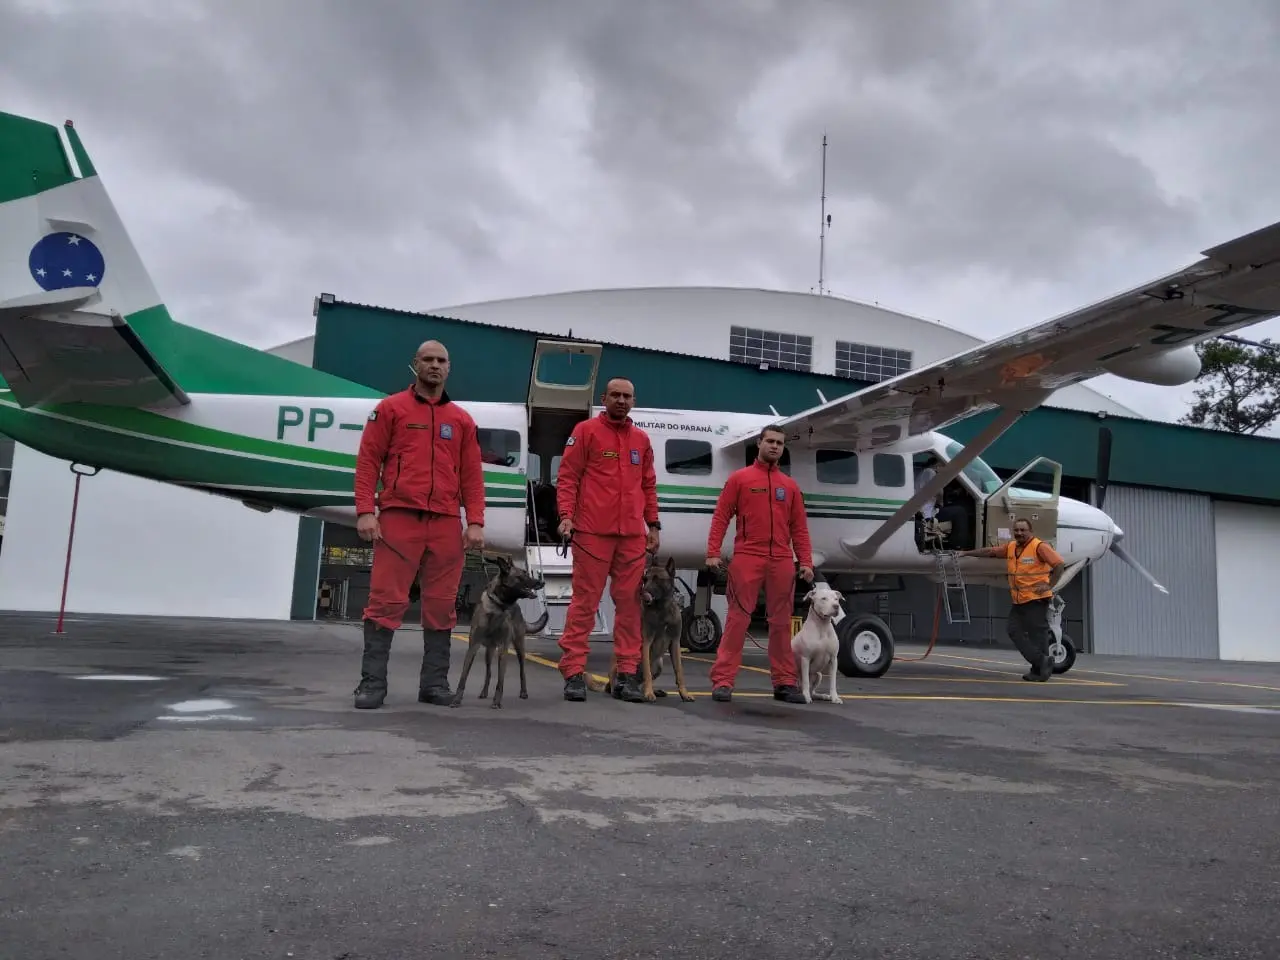 Bombeiros e cães do Paraná embarcaram para ajudar o Rio Grande do Sul